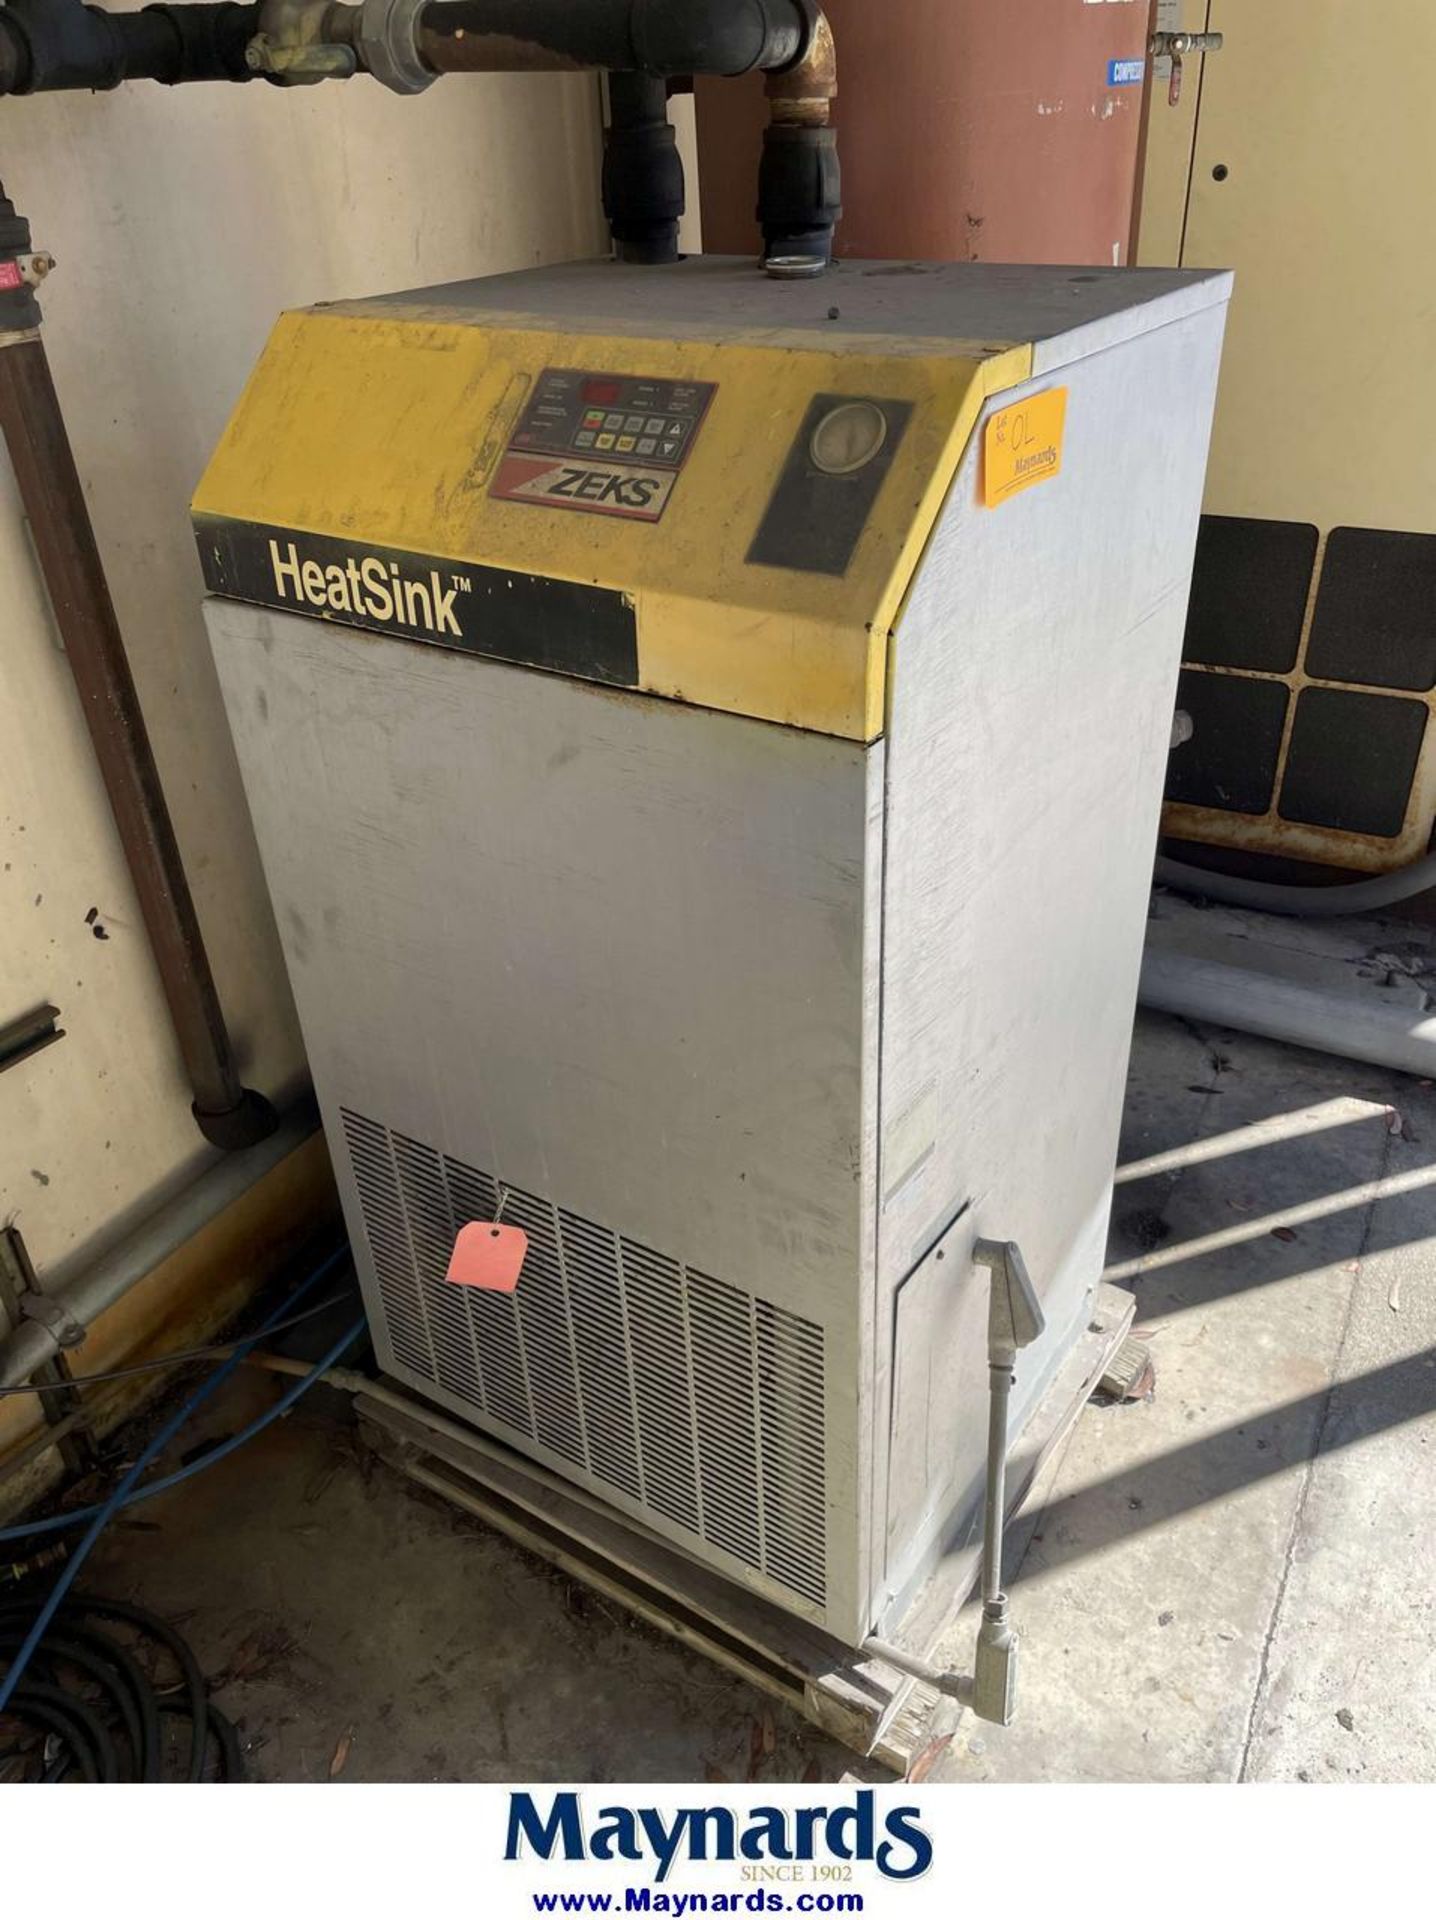 Zeks HeatSink Refrigerated Air Dryer (Display Board Does Not Work)